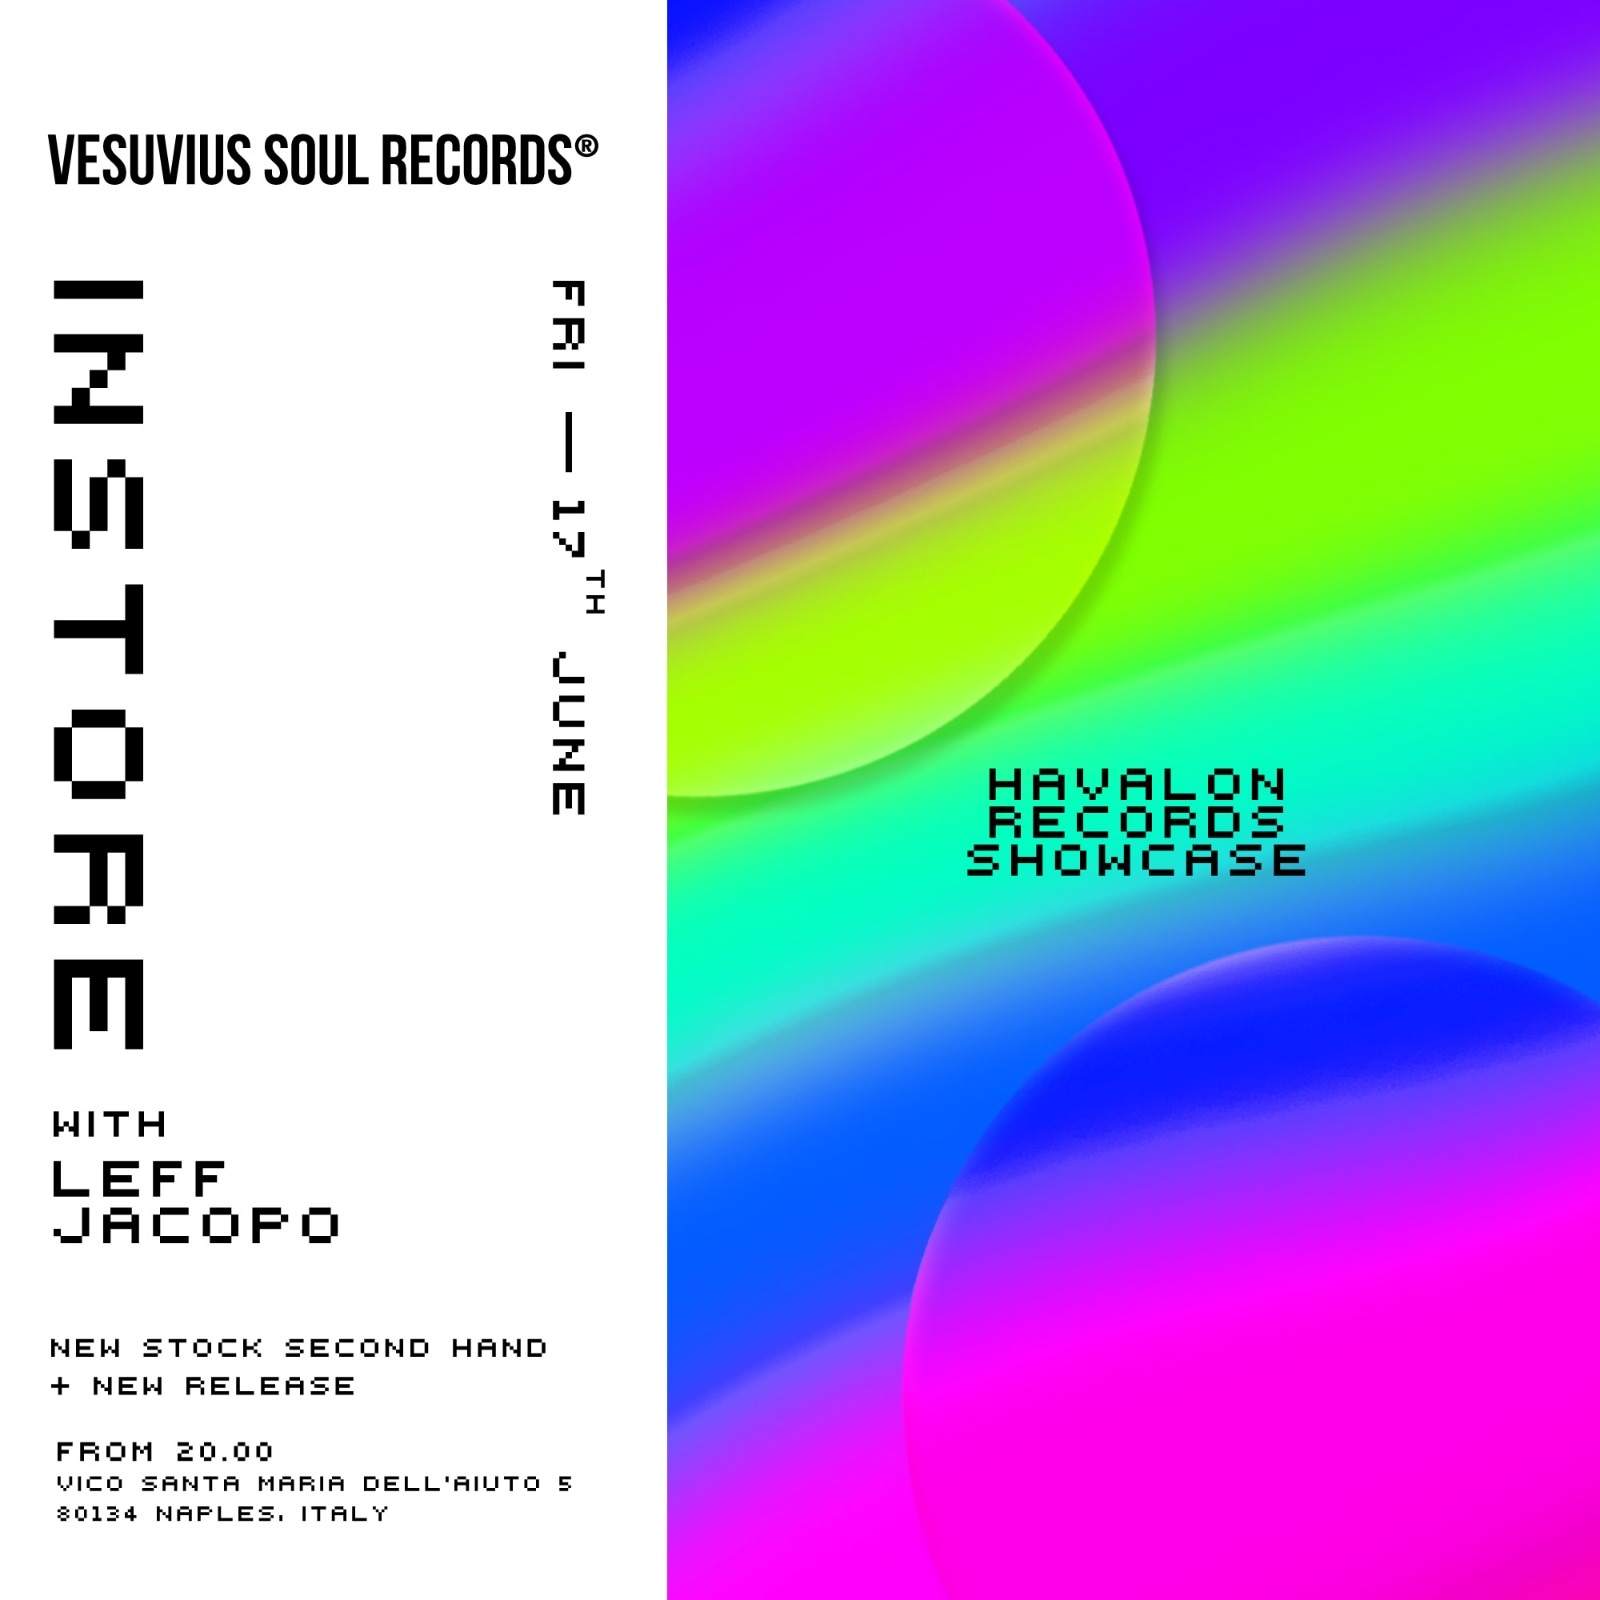 Vesuvius Soul Records instore with Havalon Records - フライヤー表